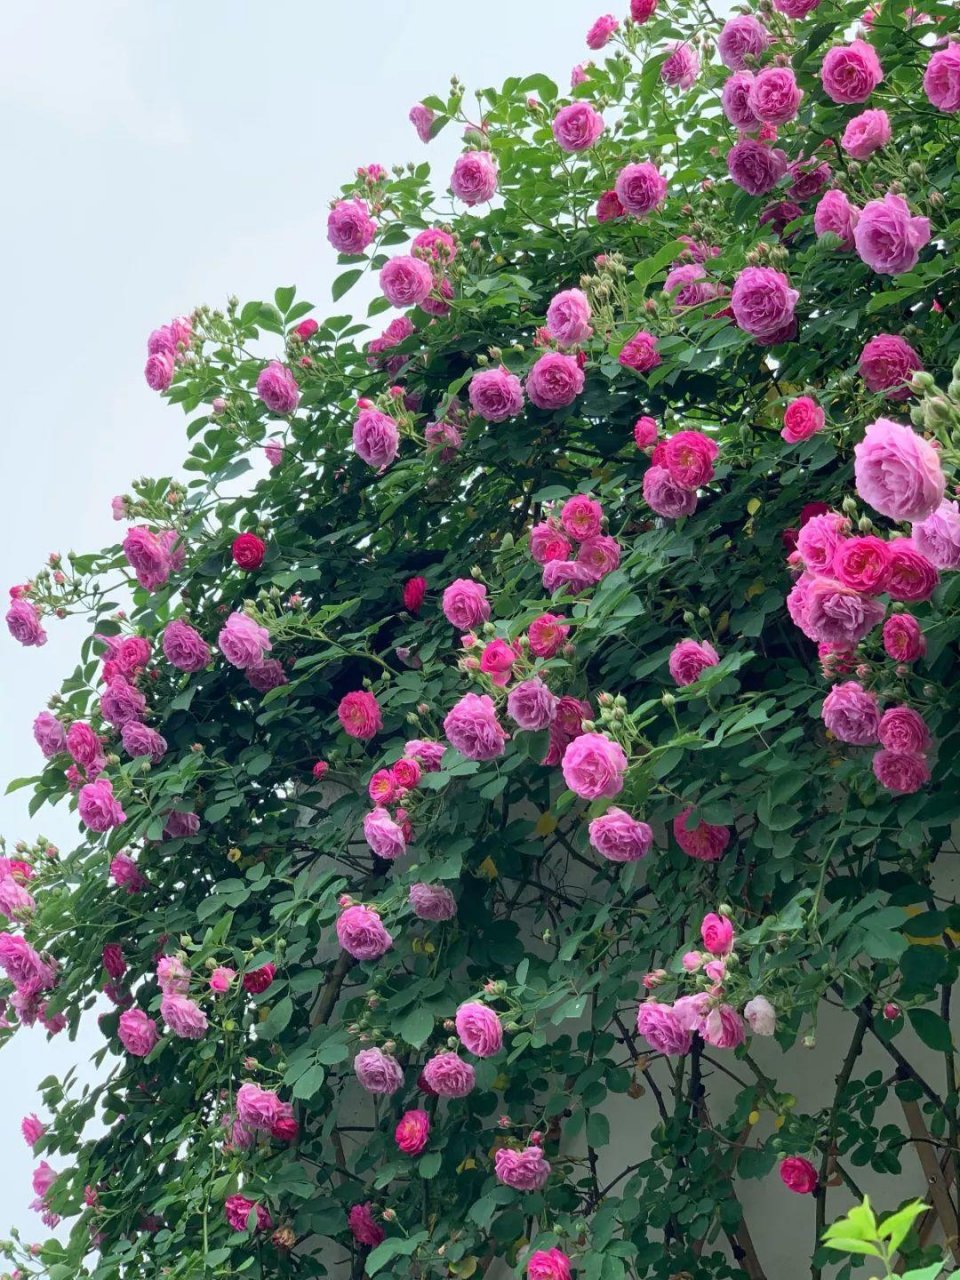 爬满蔷薇的小院子图图片